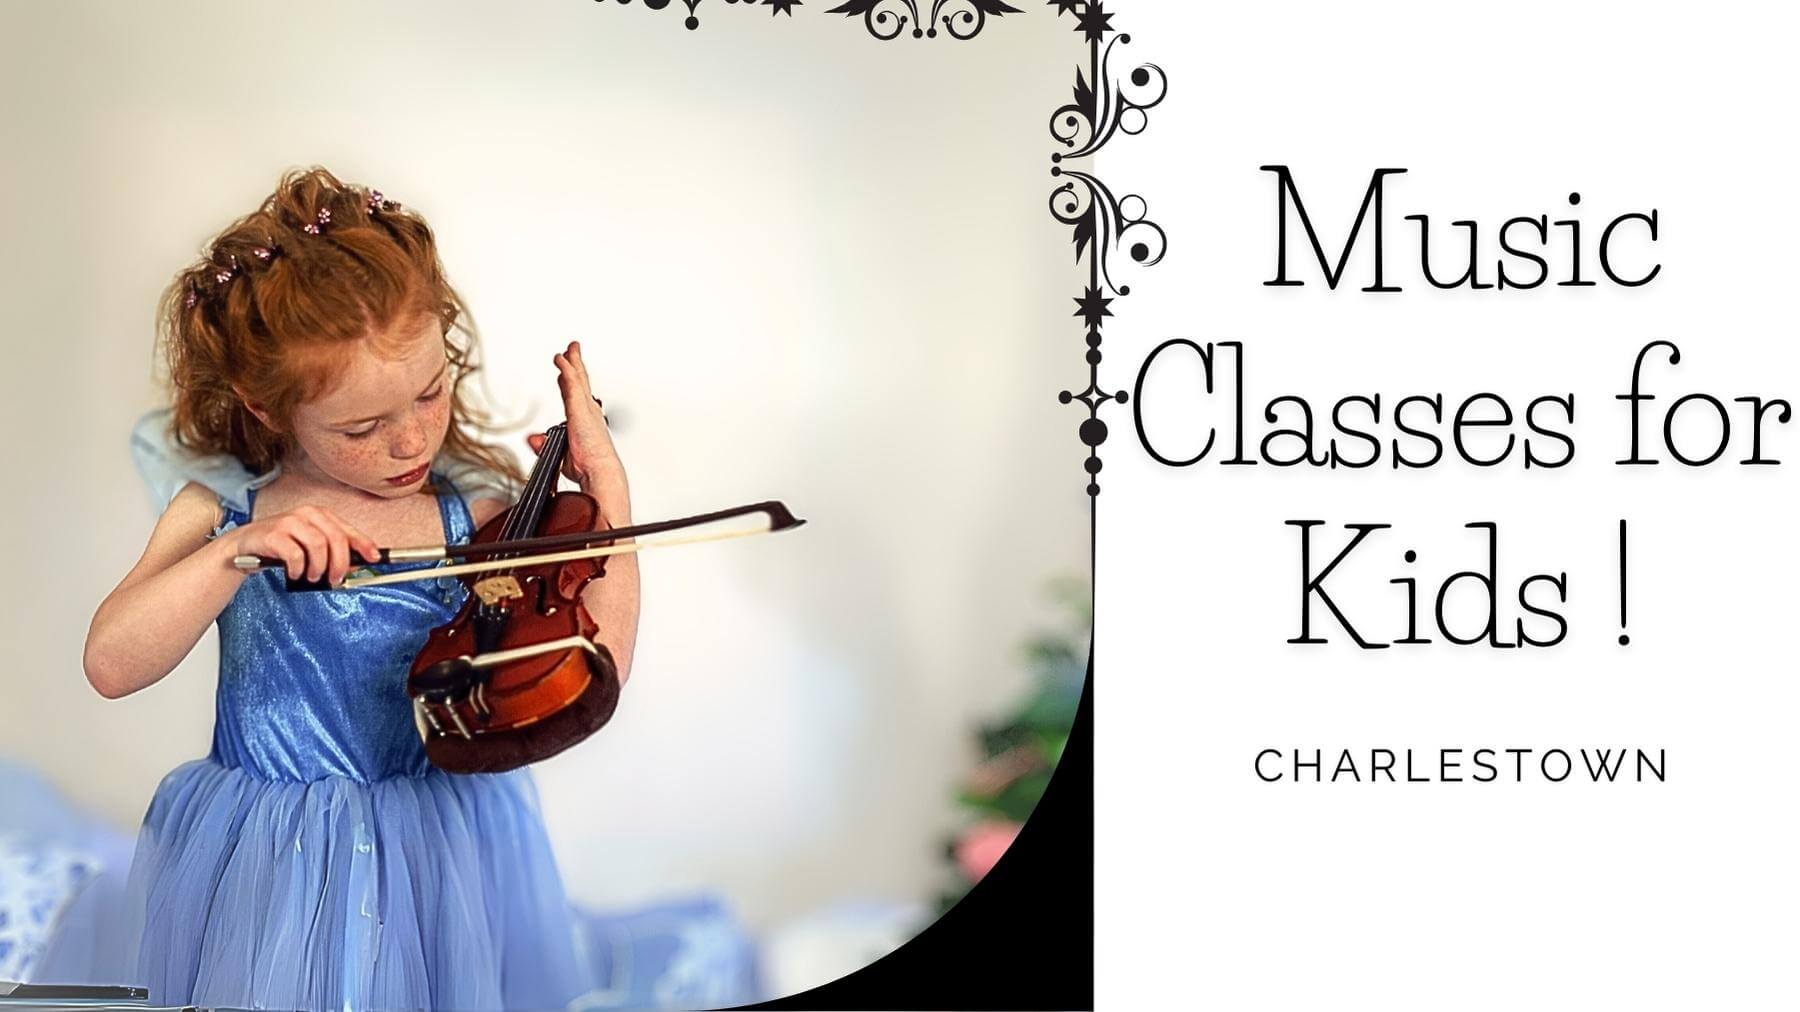 Music Classes for Kids in Charlestown, Massachusetts